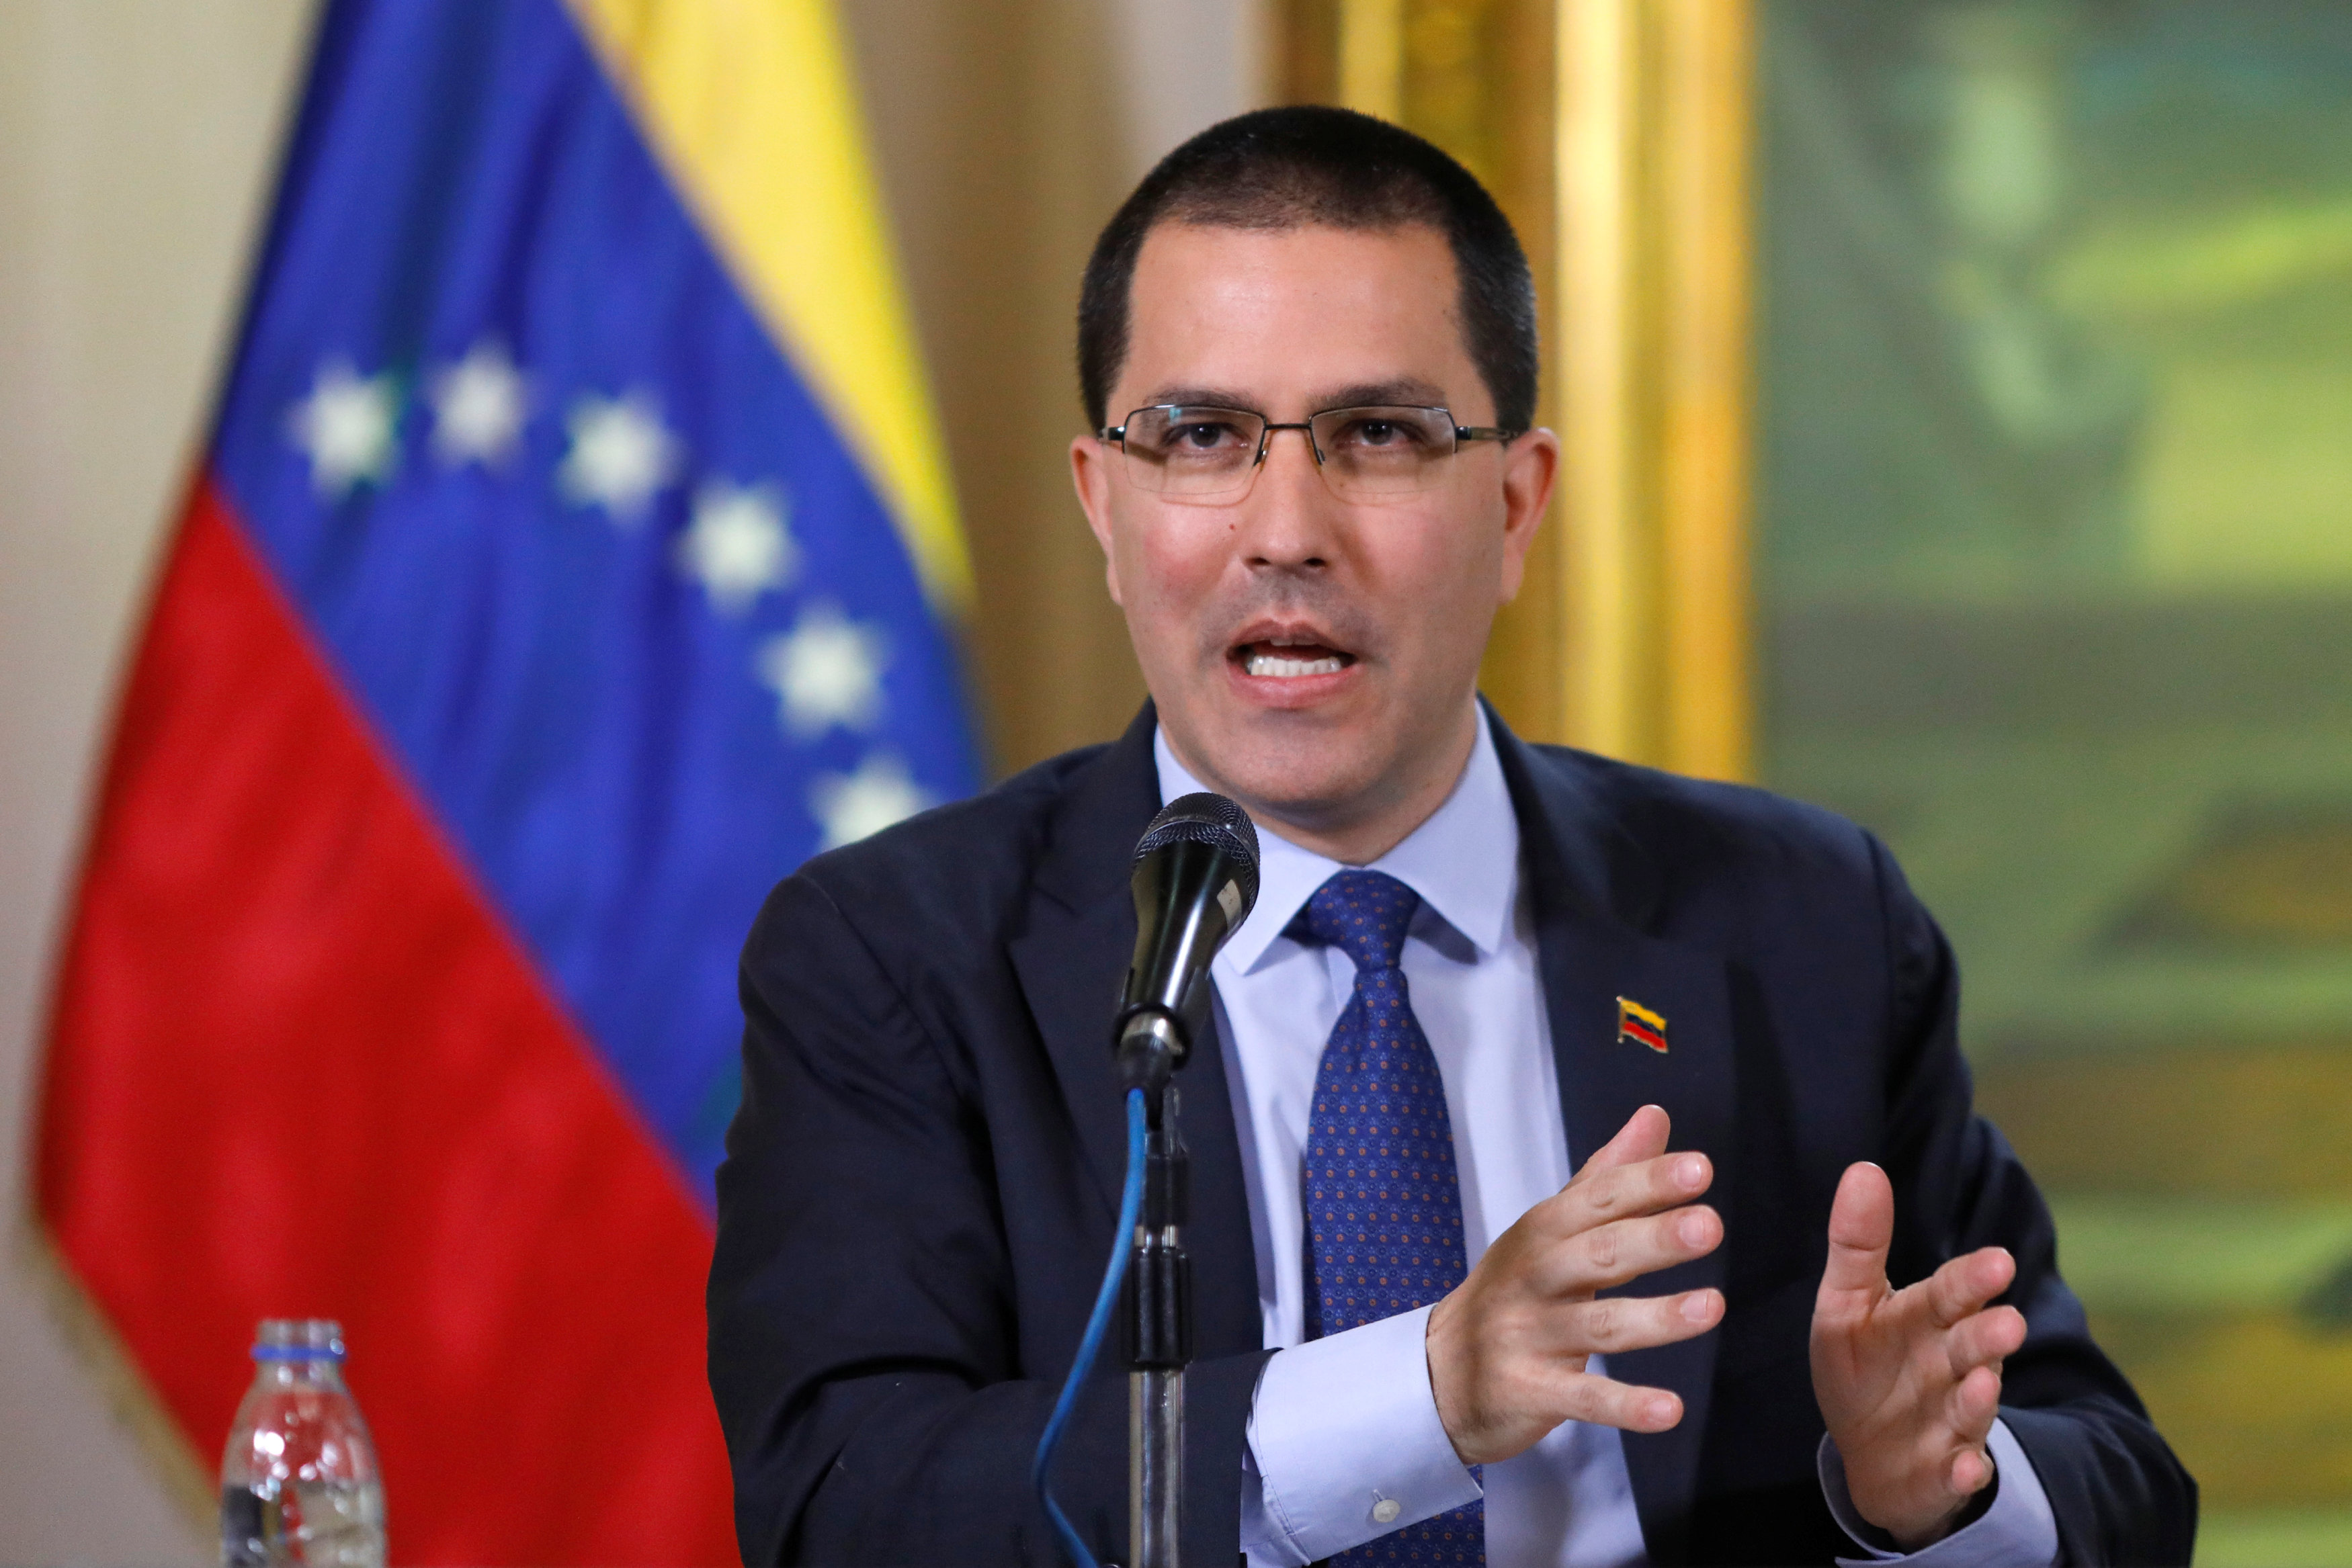 Chiste incomprensible: Chavismo revisará las relaciones bilaterales con los gobiernos de Europa